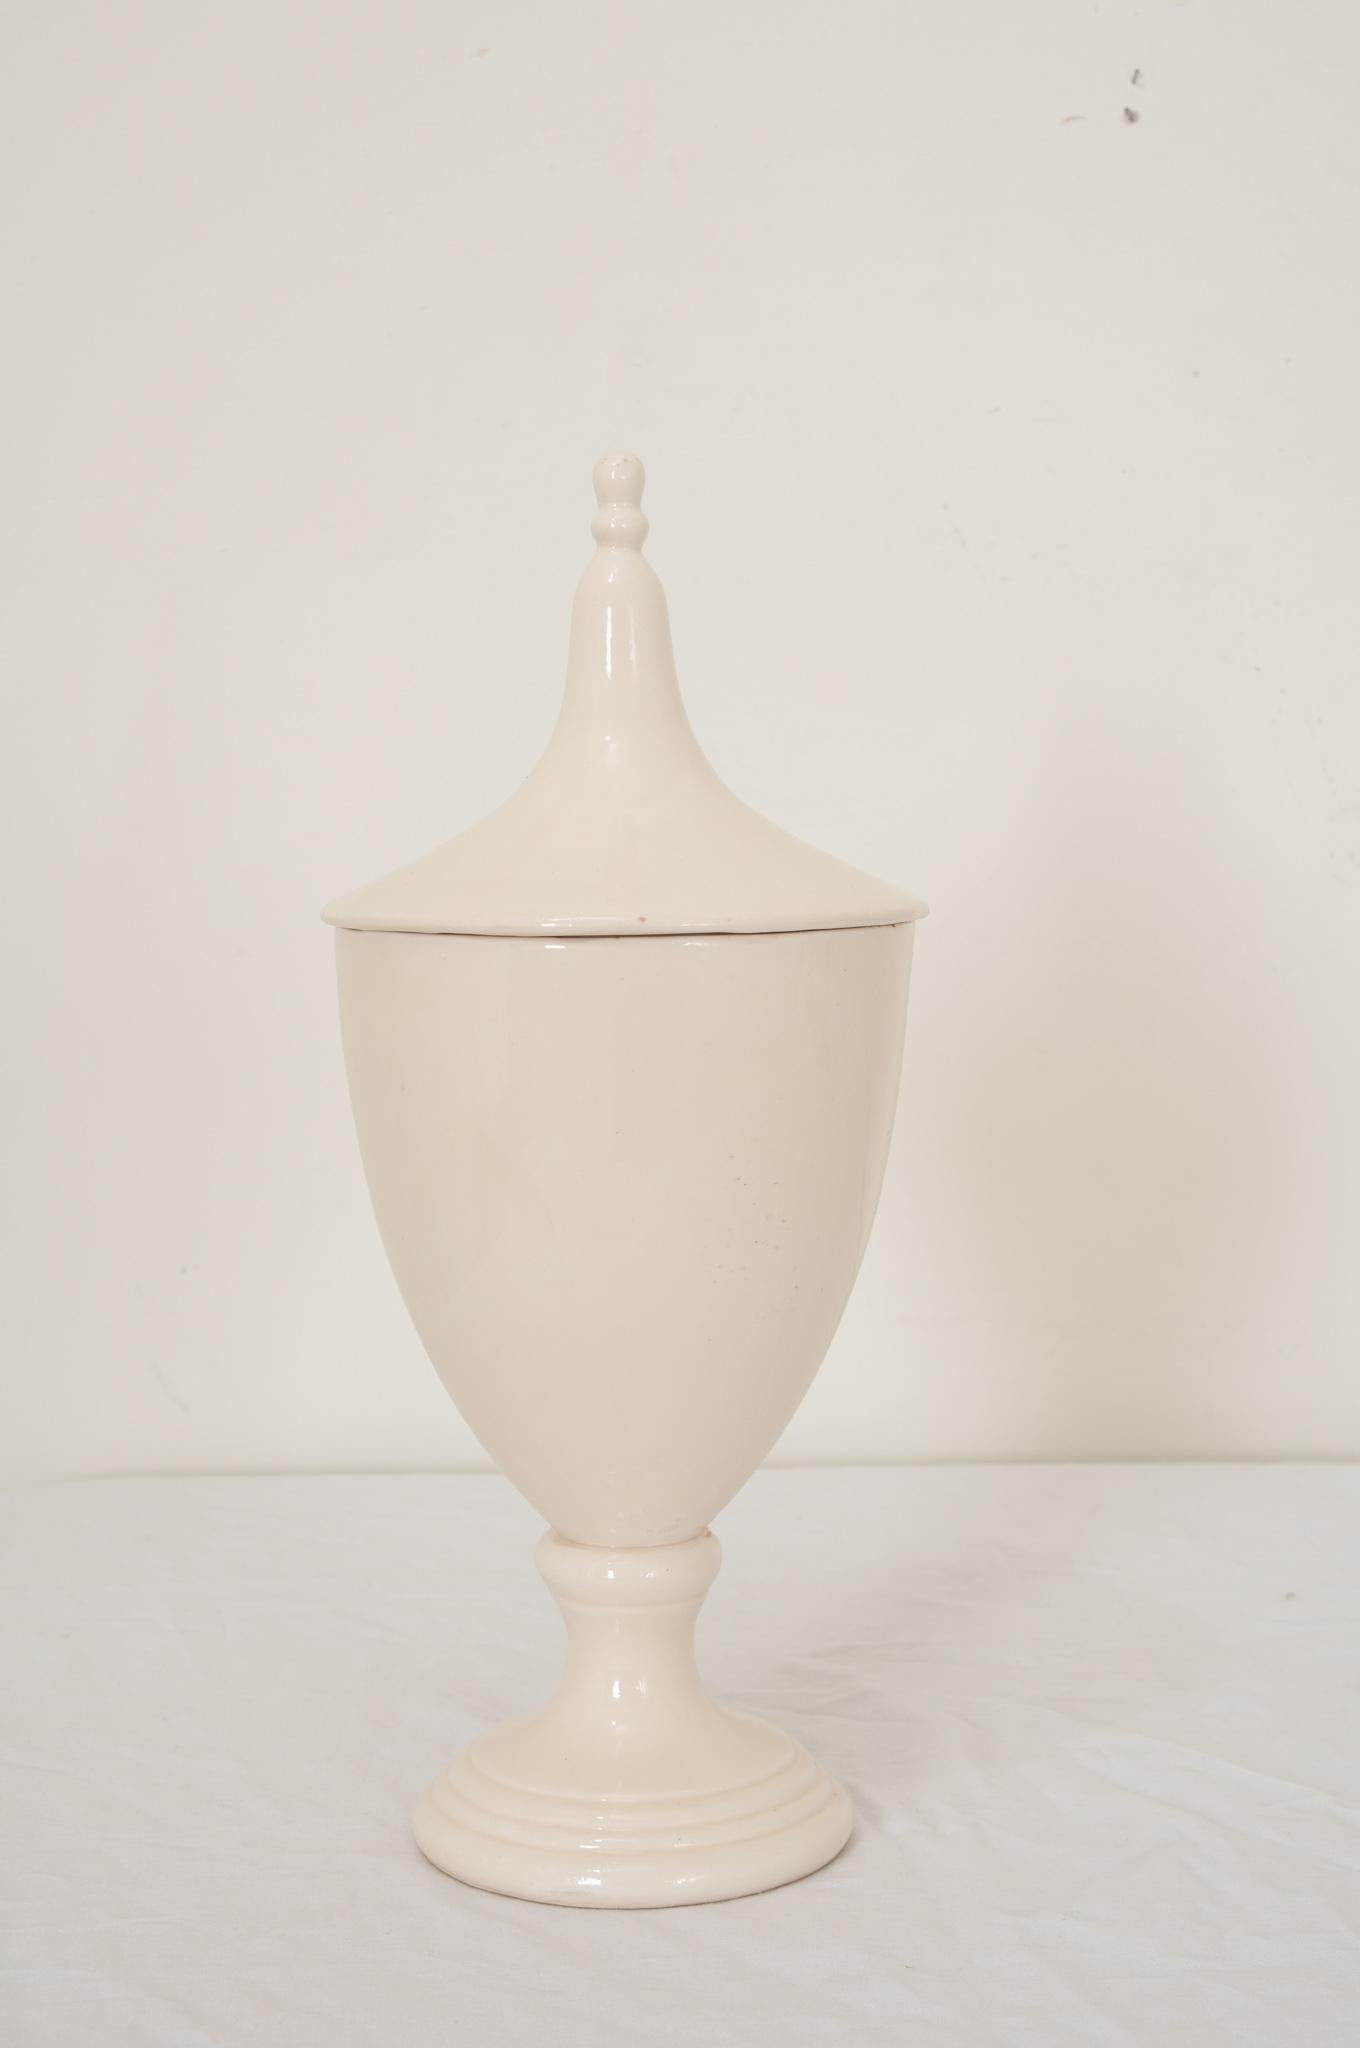 Ein englischer Apotheker- oder Kräuterkrug des 19. Jahrhunderts aus weißer Keramik in Form einer klassischen Urne. Die Krüge wurden von Apothekern in Apotheken und Dispensarien in Krankenhäusern und Klöstern verwendet. Apotheker brauchten Behälter